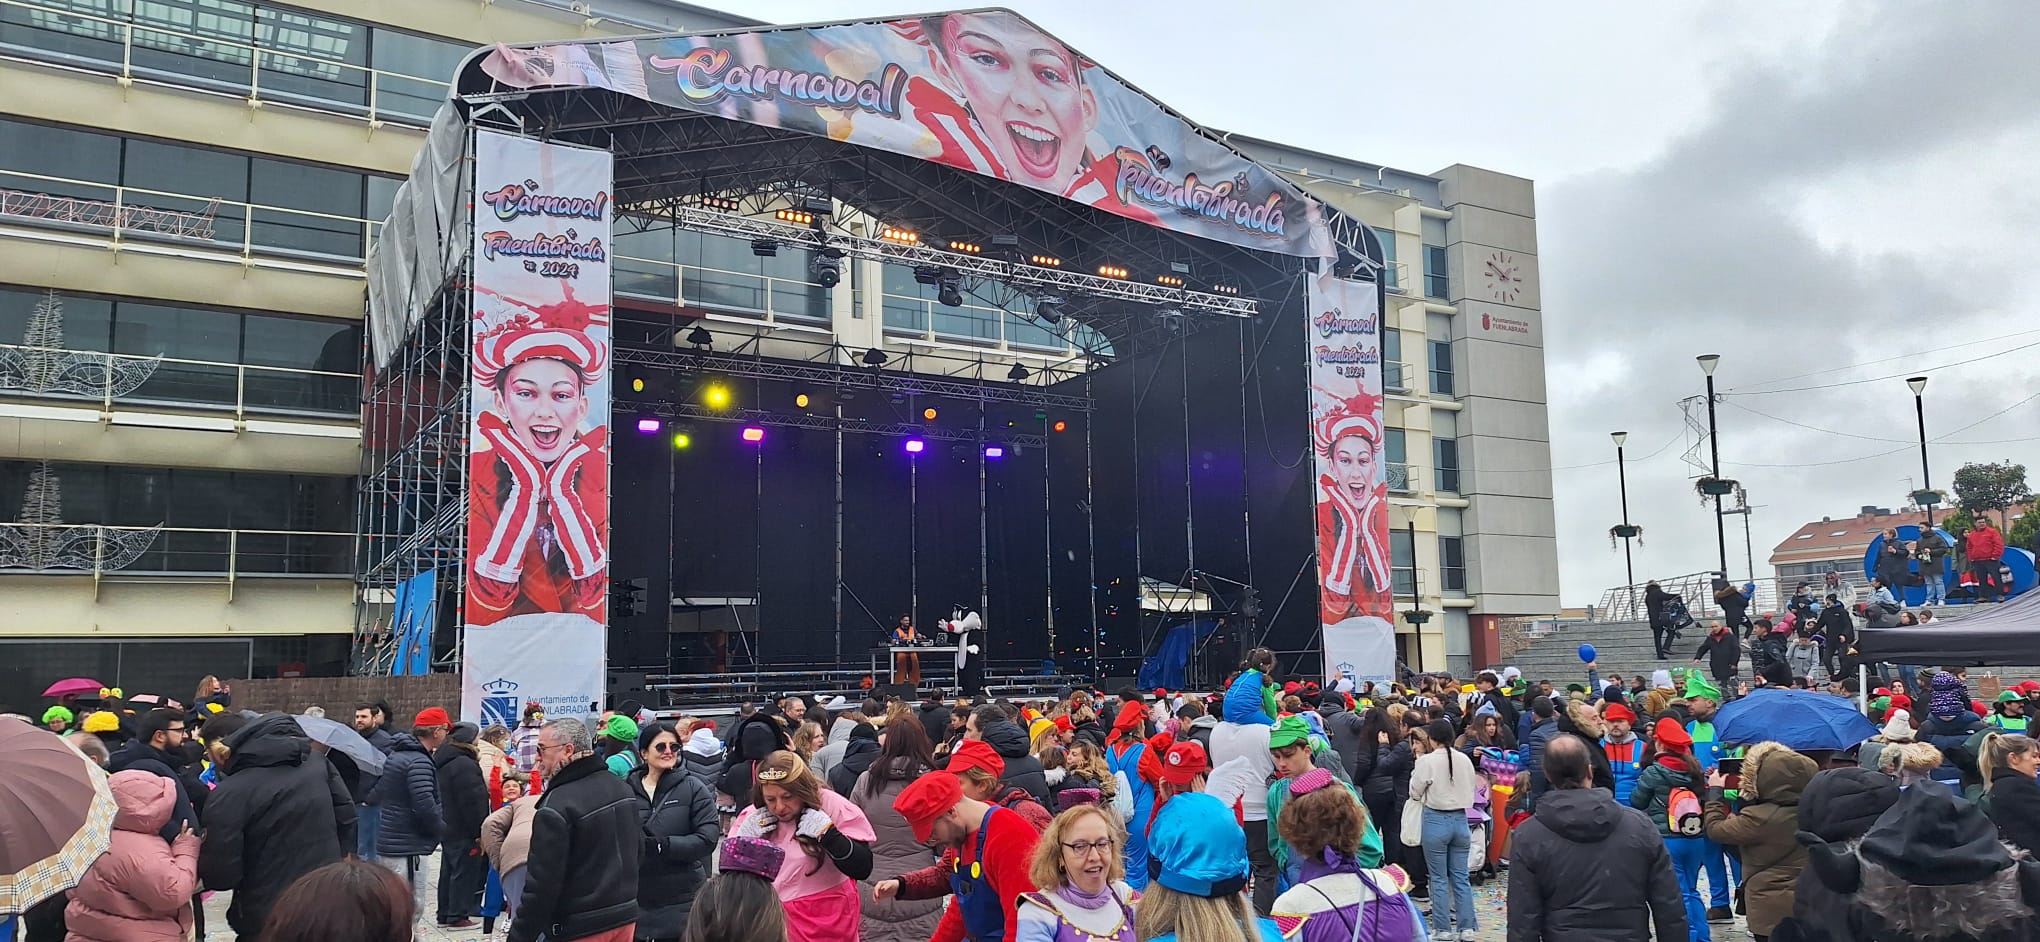 El Carnaval de Fuenlabrada alcanza un récord de participación con más de 60 comparsas y un original pregón de la influencer local Lala Chus.